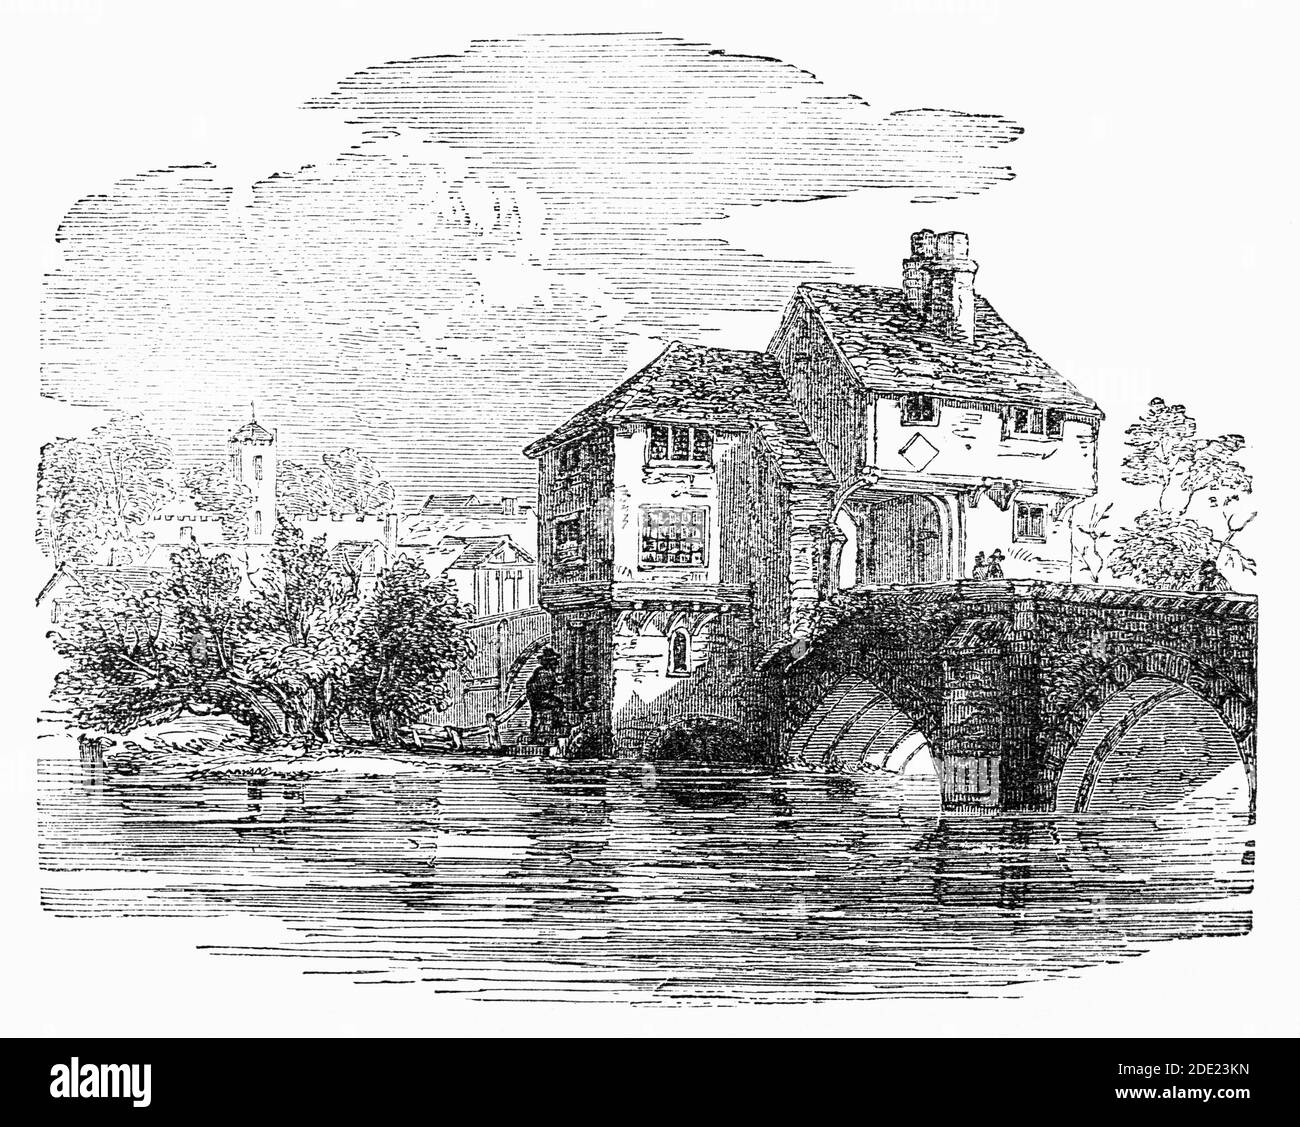 Un croquis du XIXe siècle de l'ancienne prison de Bedford, construit sur le pont de l'autre côté de la rivière Ouse. C'est ici que John Bunyan a été emprisonné en 1661 pour avoir prêché illégalement et pendant sa peine de 12 ans a écrit "Pilgrim's Progress" Banque D'Images